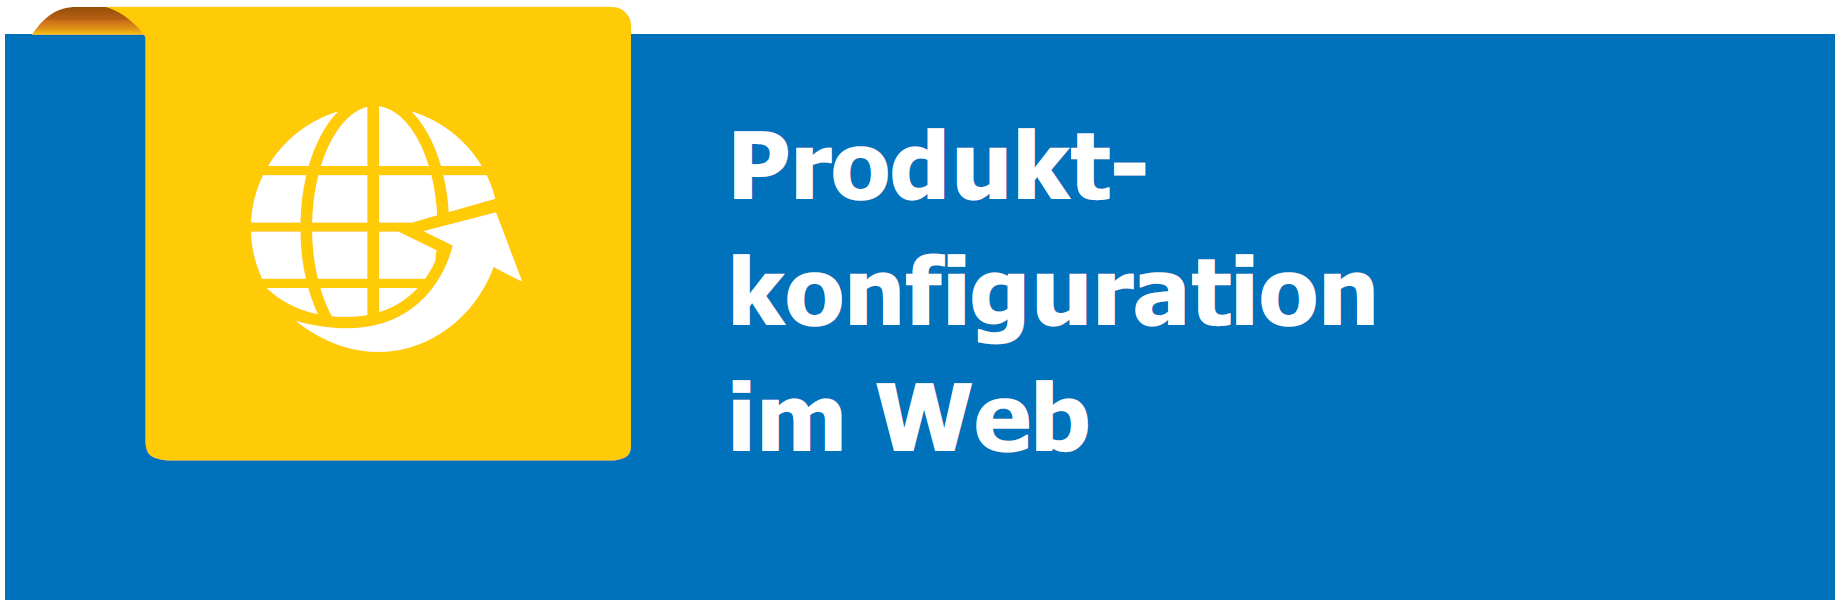 Online-Konfigurator und Produktkonfigurator im Web / Webshop